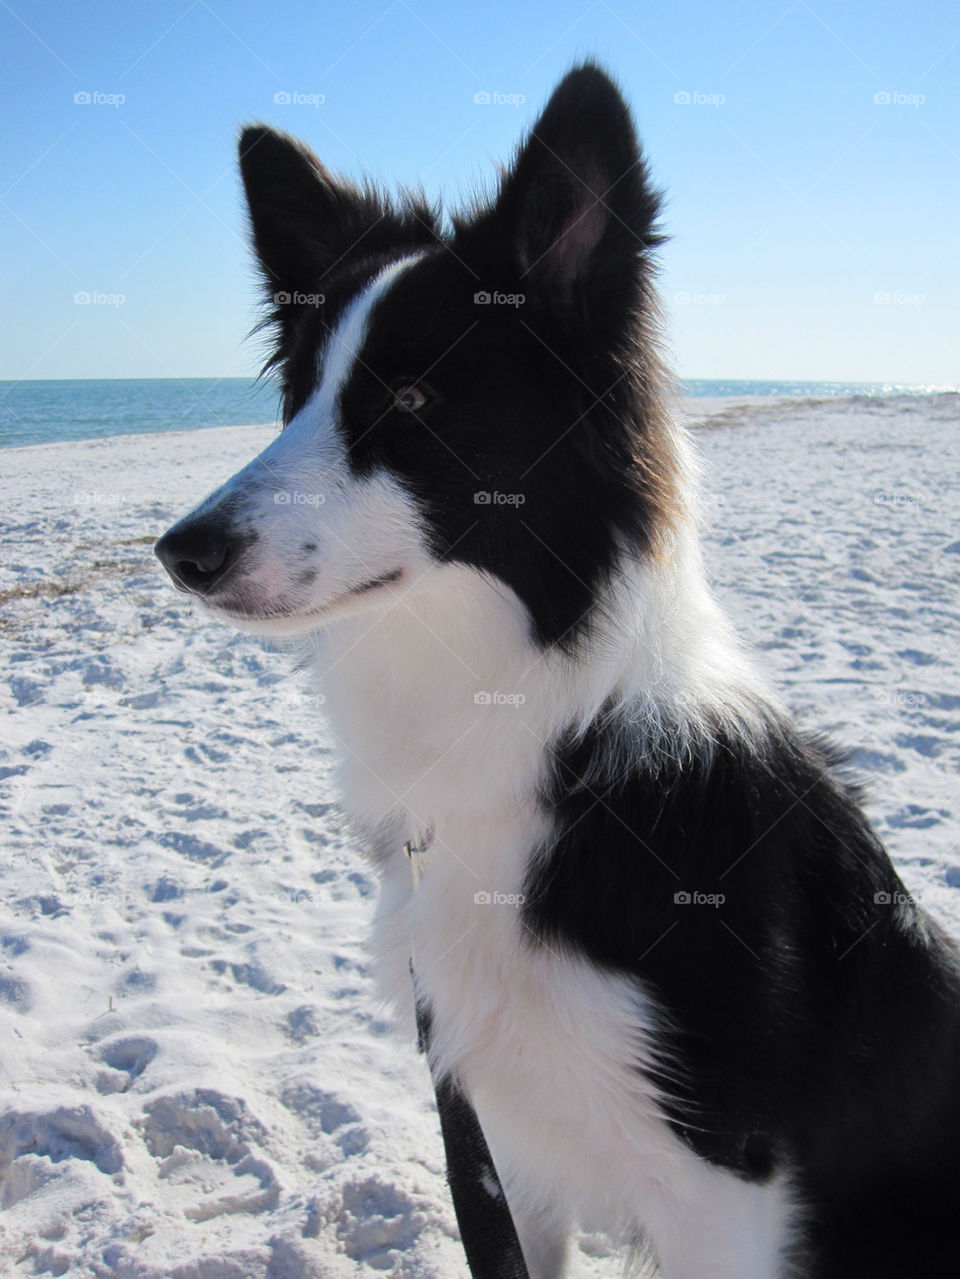 beach ocean dog sand by melisrush